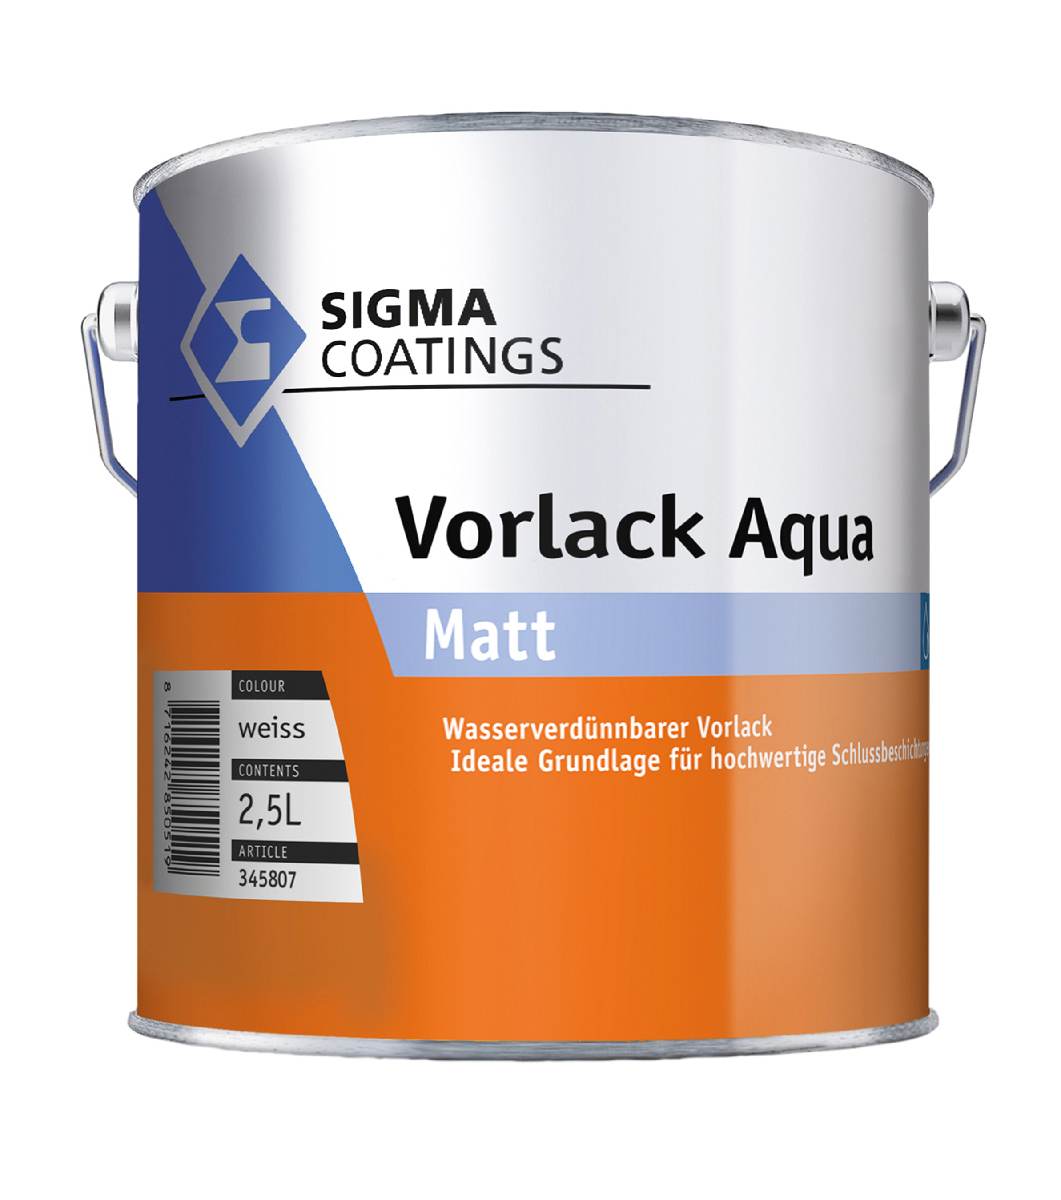 Sigma Vorlack Aqua 1 L in Weiß, Acryl-Vorlack, matt, wasserverdünnbar, für innen und außen